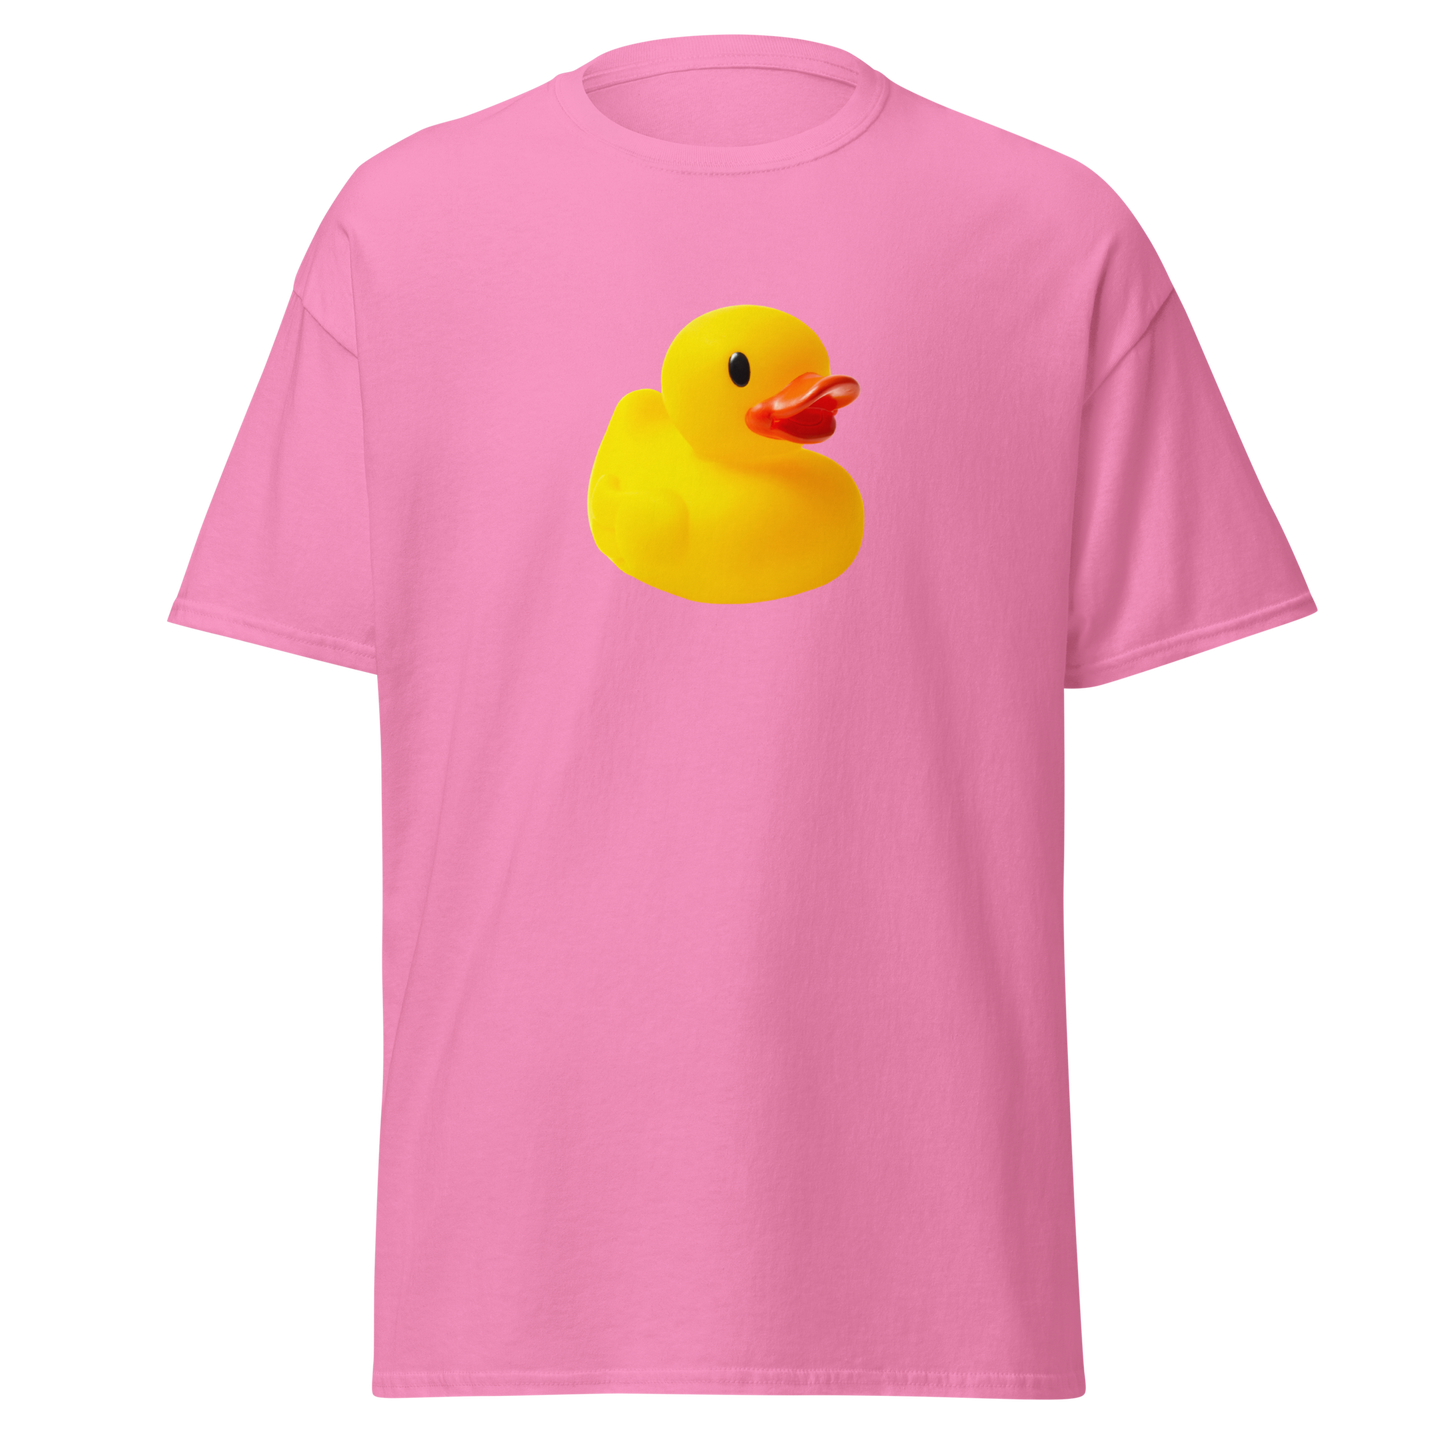 Rubber Duck T-Shirt